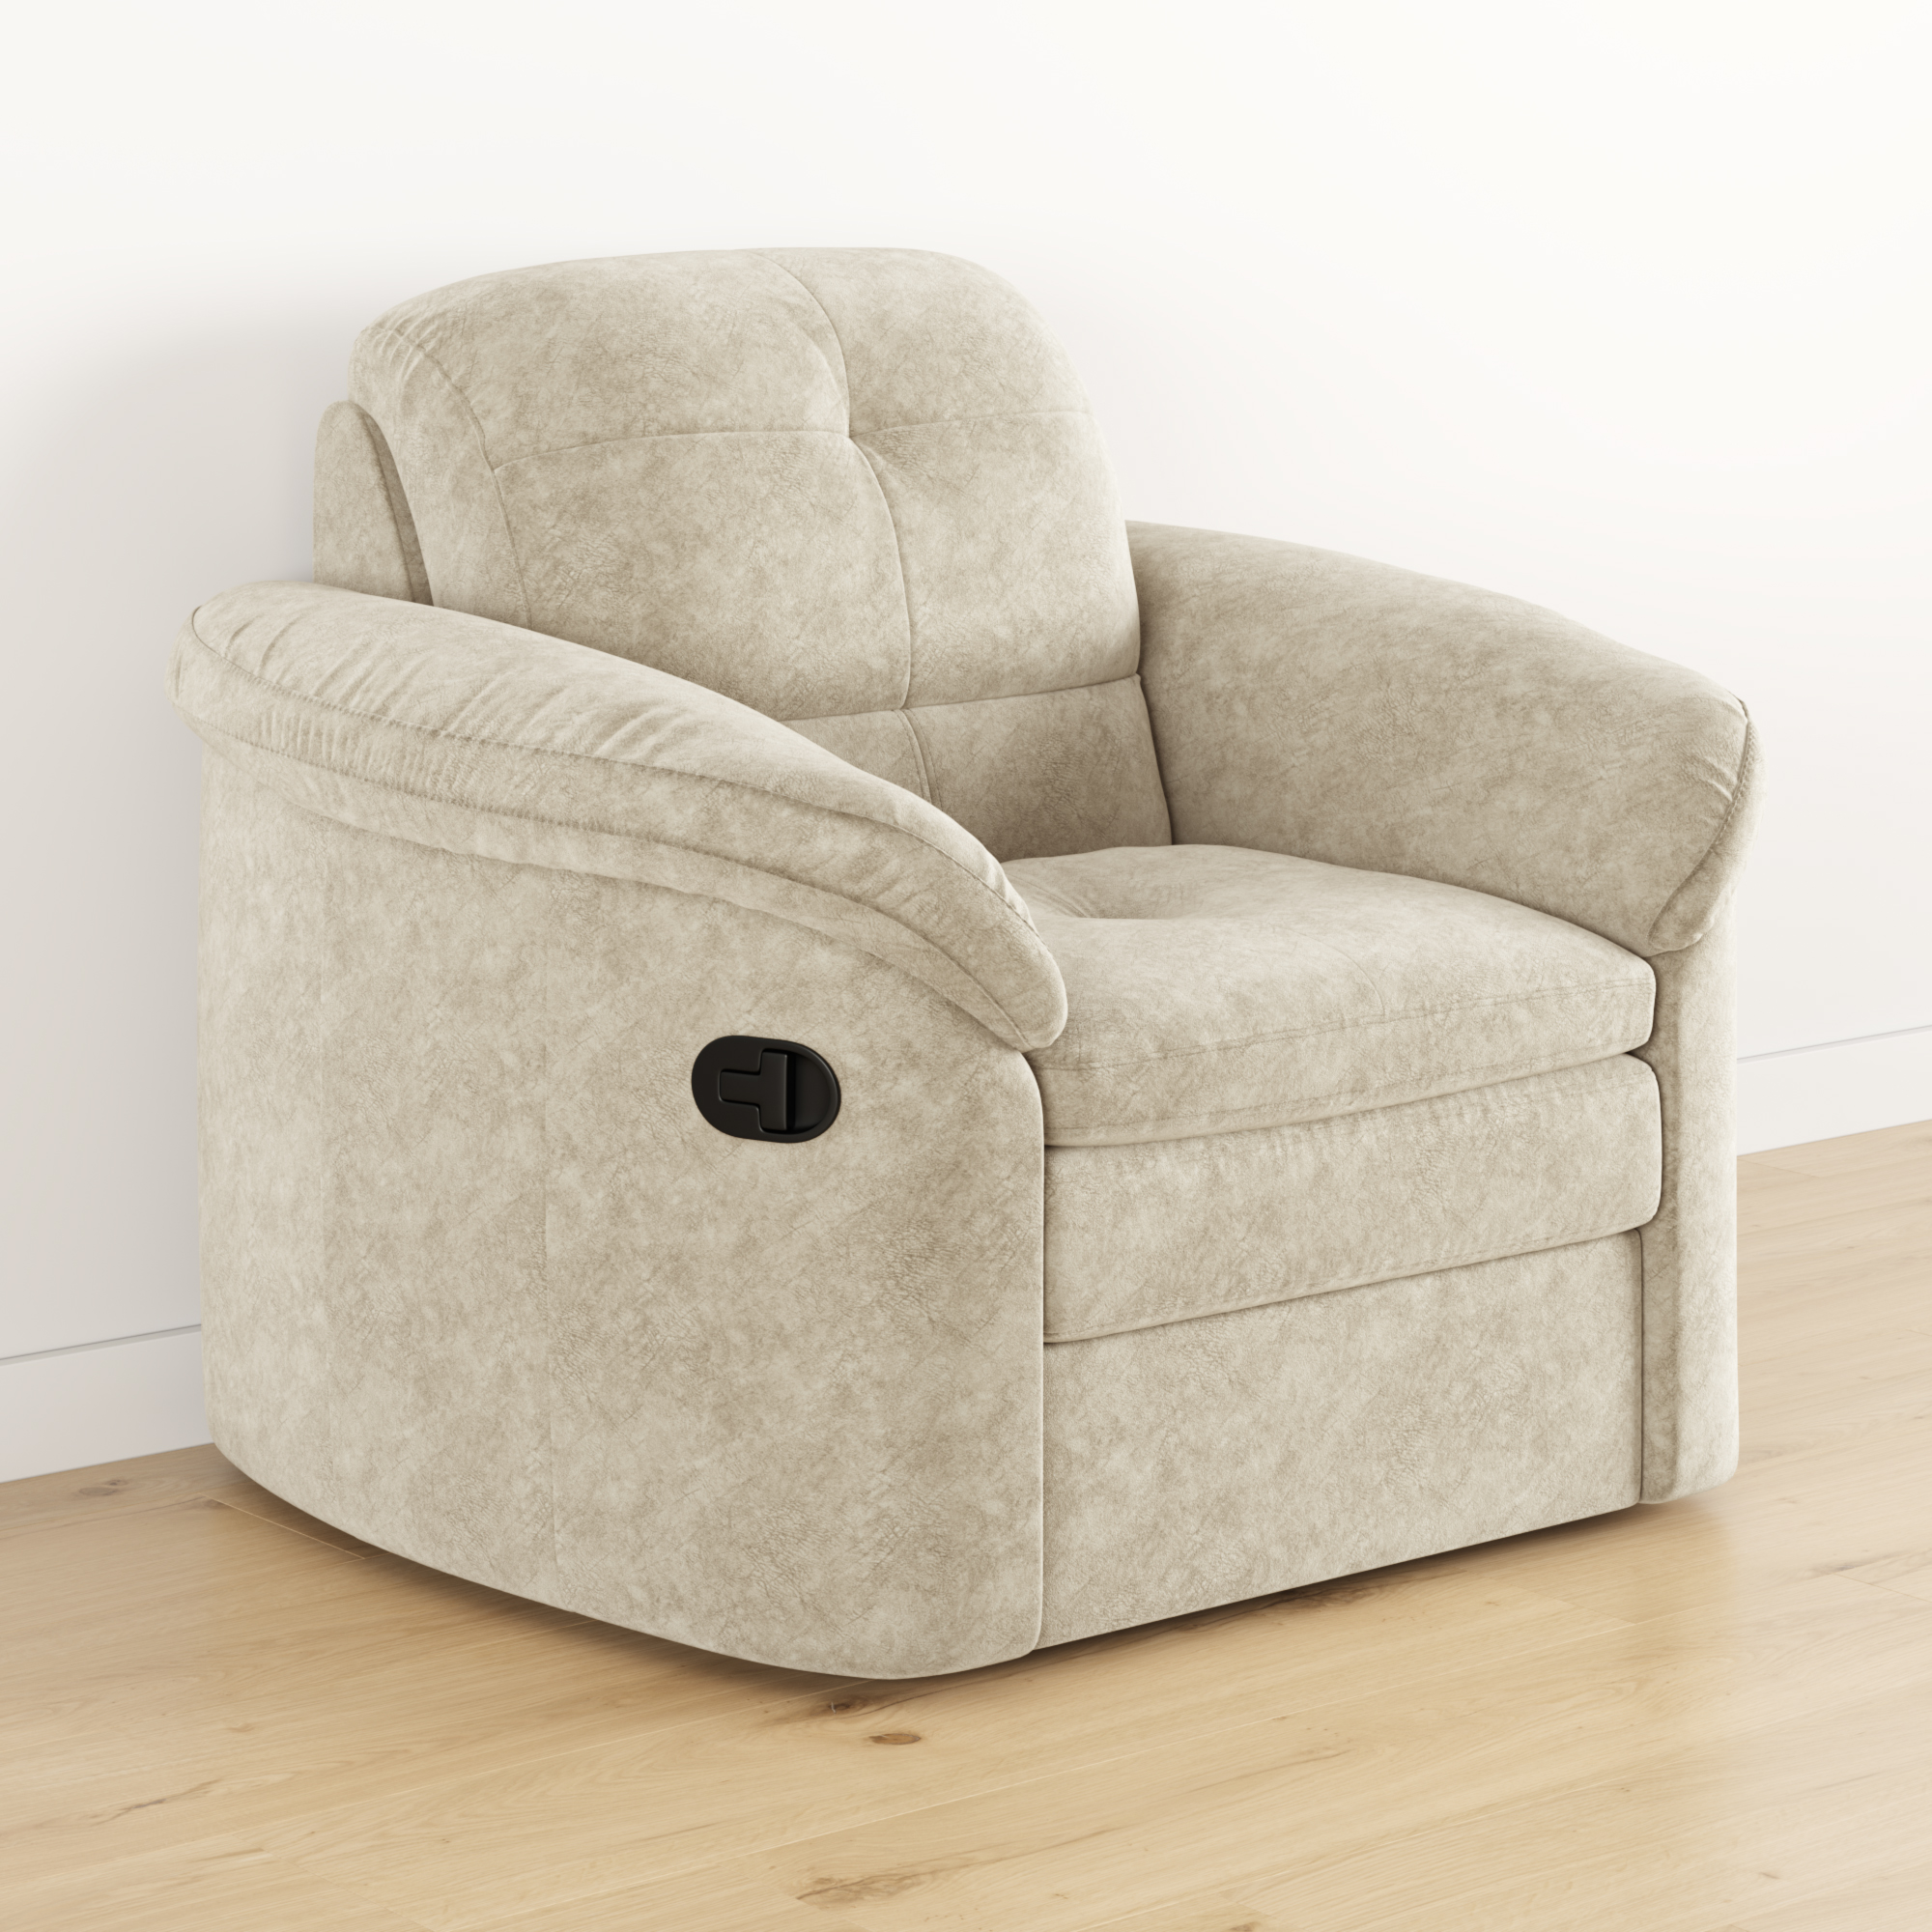 Lazurit Мягкое кресло глайдер Коннери кресло качалка глайдер мебель импэкс модель 68 серый ясень ткань verona cyklam